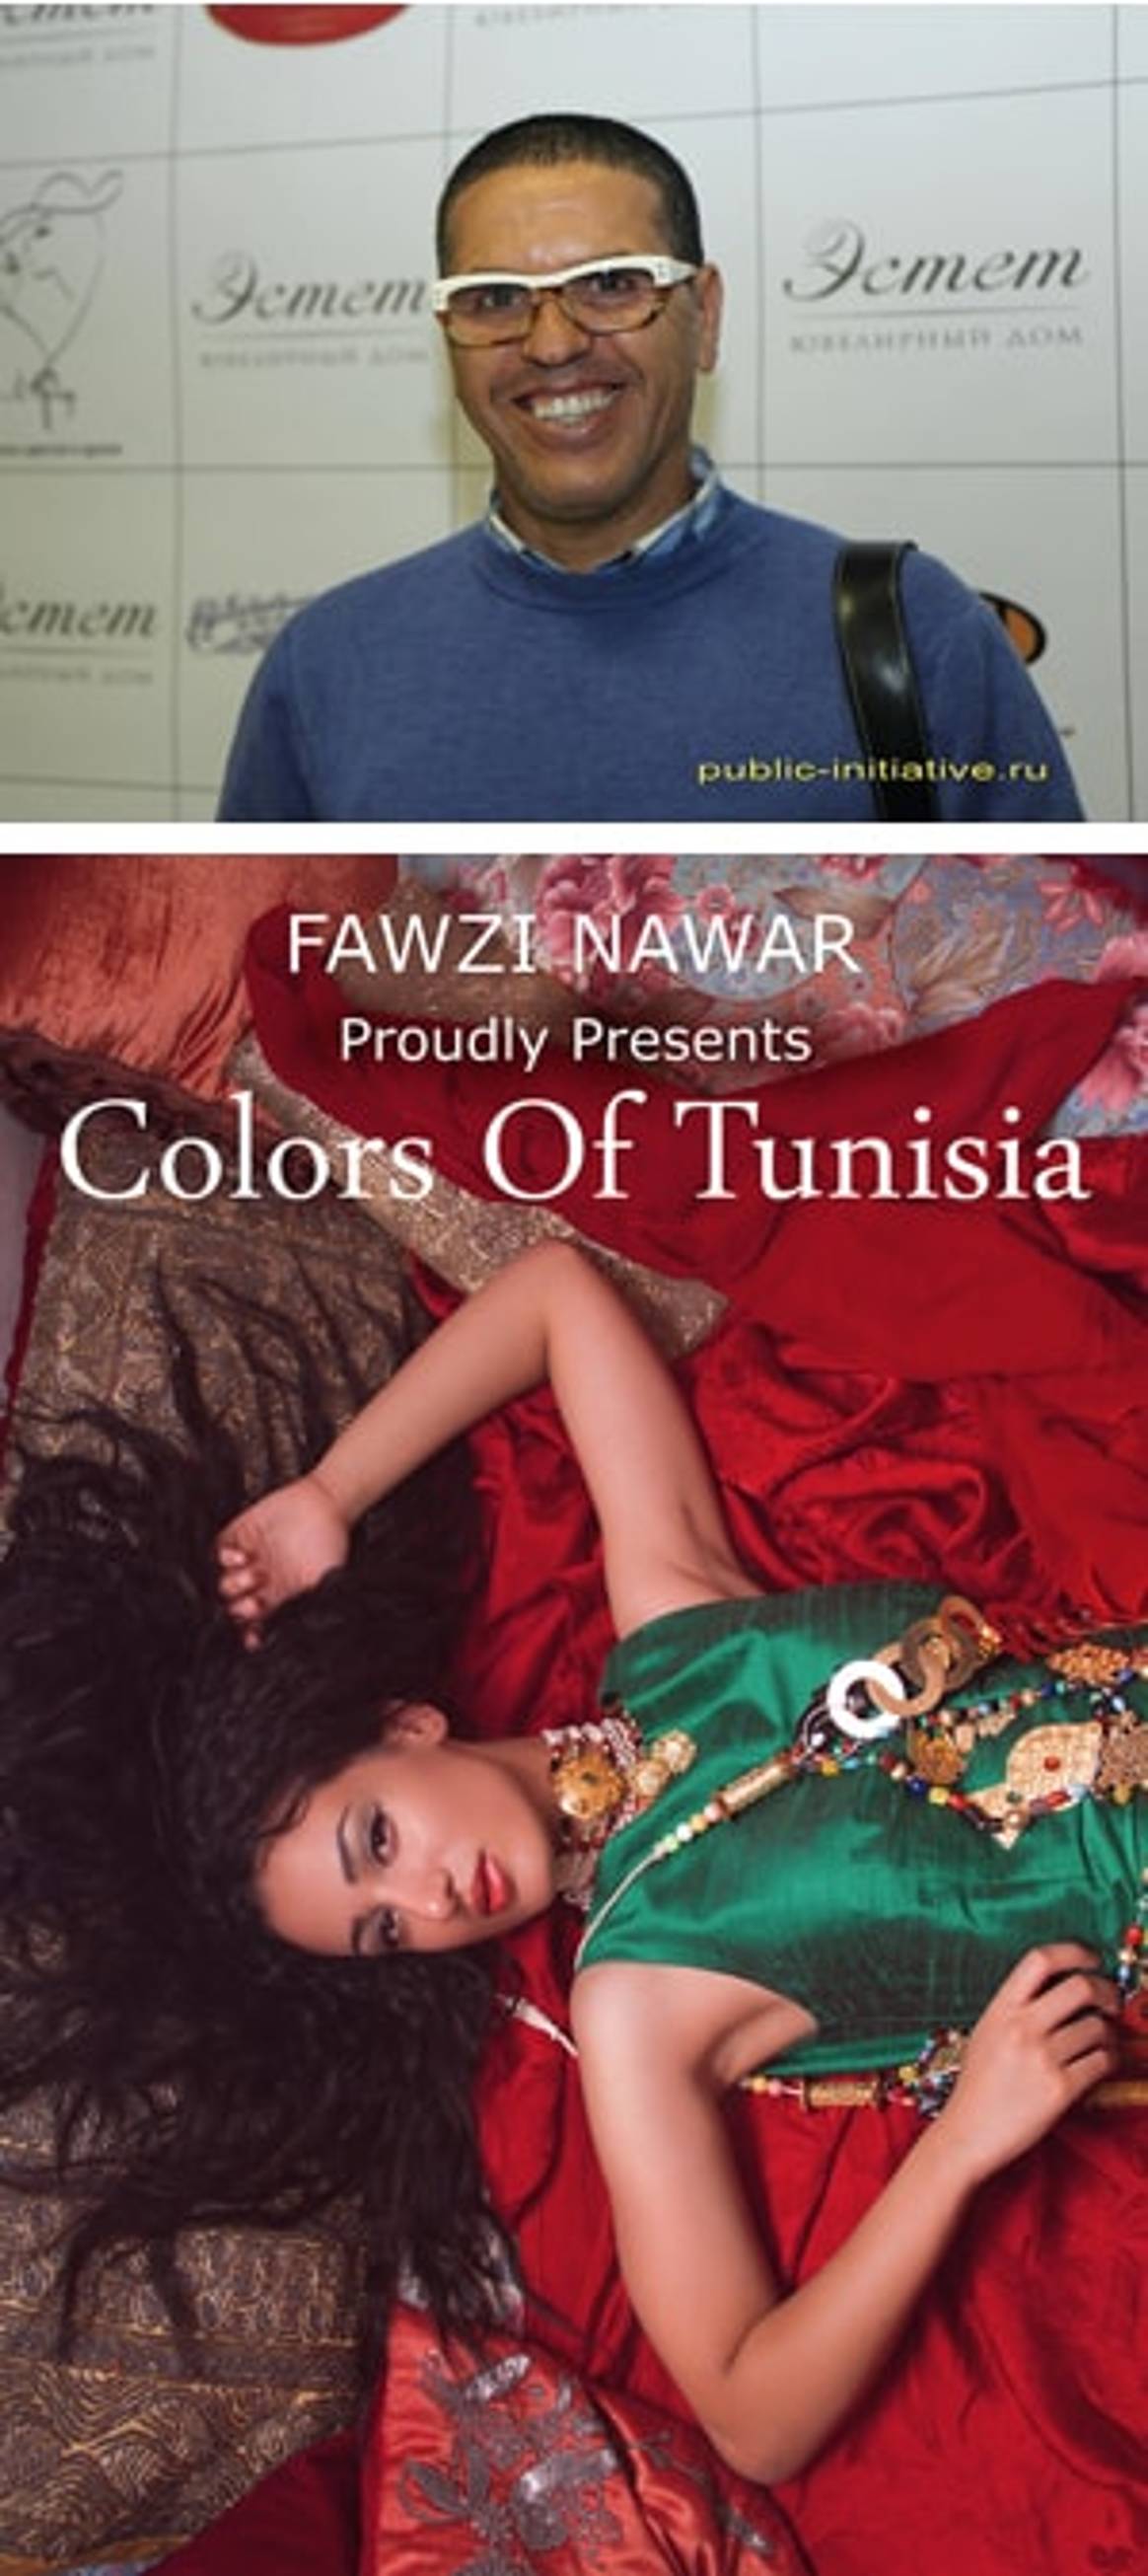 Fawzi Nawar: Для меня Москва - модная столица мира